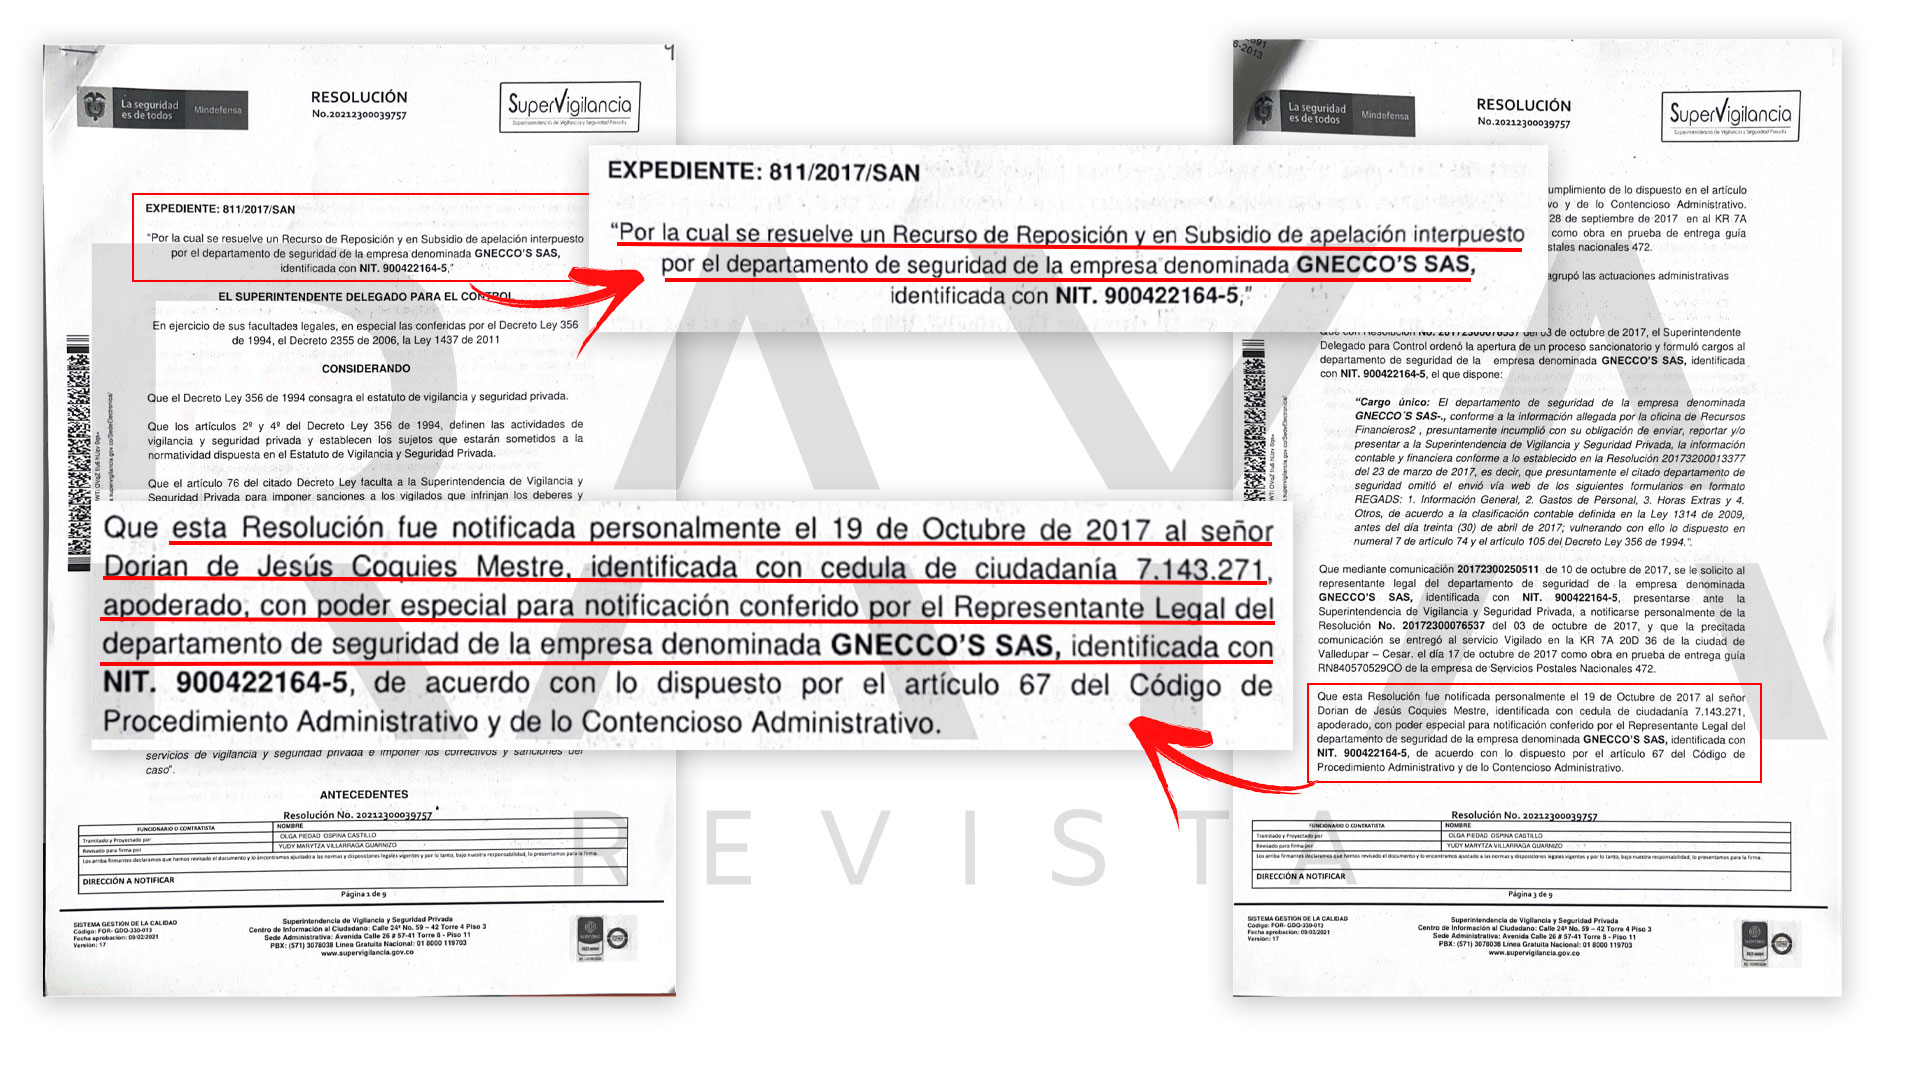 Documento de la SuperVigilancia donde aparece Coquies Maestre, apoderado para ser notificado del proceso relacionado con el departamento de seguridad de Gnecco.